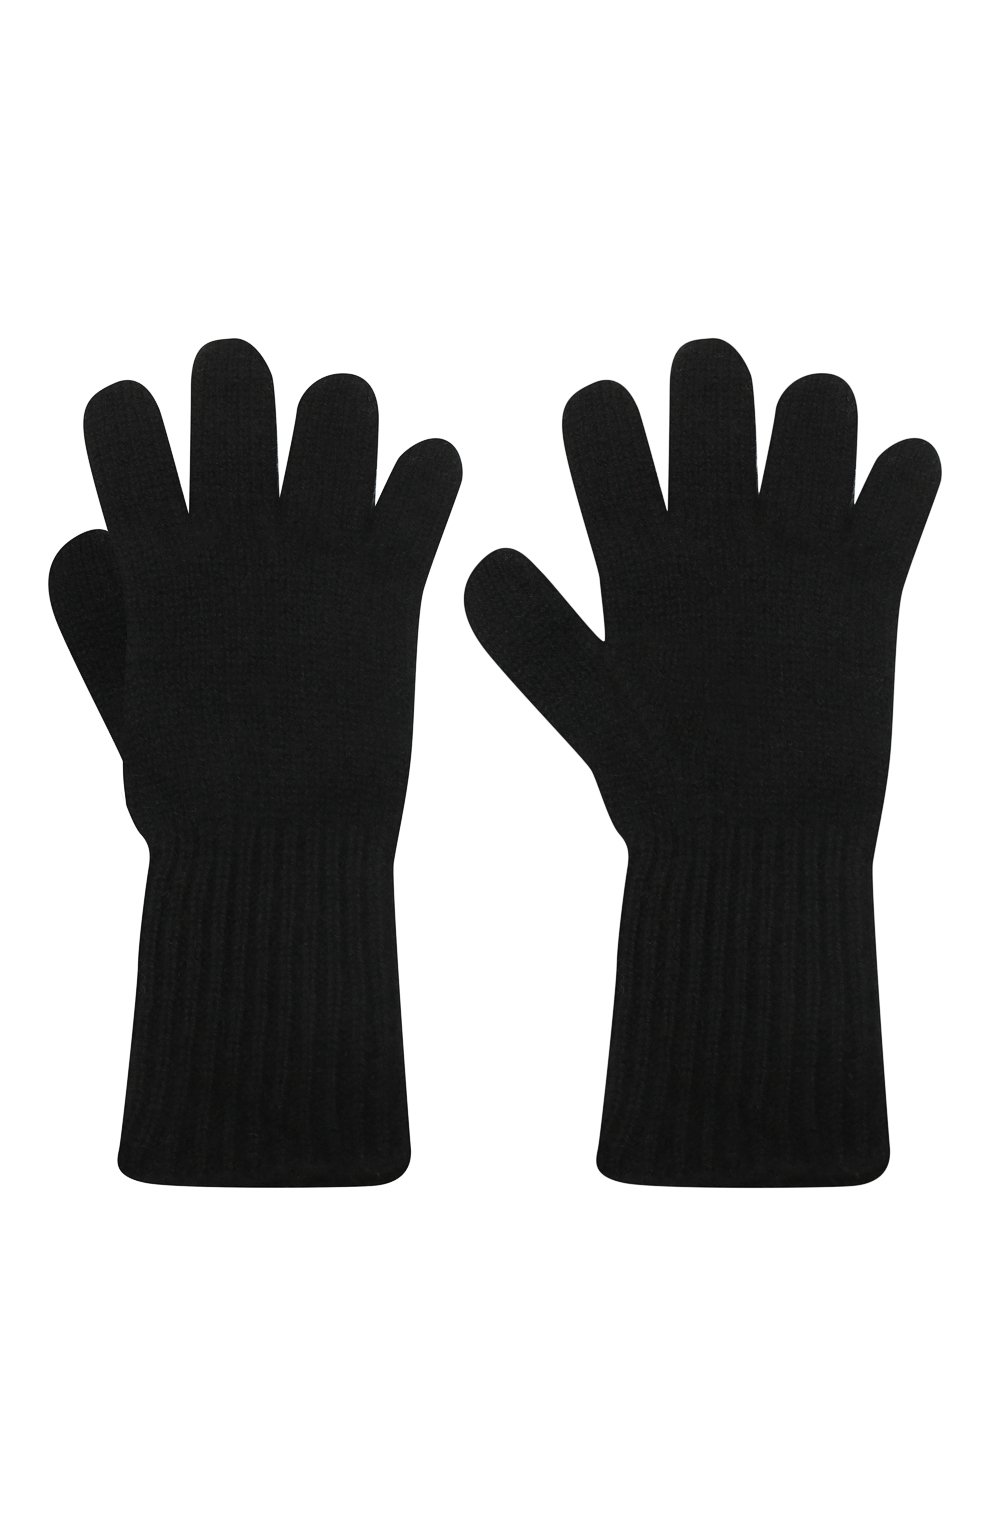 Детские кашемировые перчатки GIORGETTI CASHMERE черного цвета, арт. MB1699/8A | Фото 2 (Материал: Текстиль, Кашемир, Шерсть)